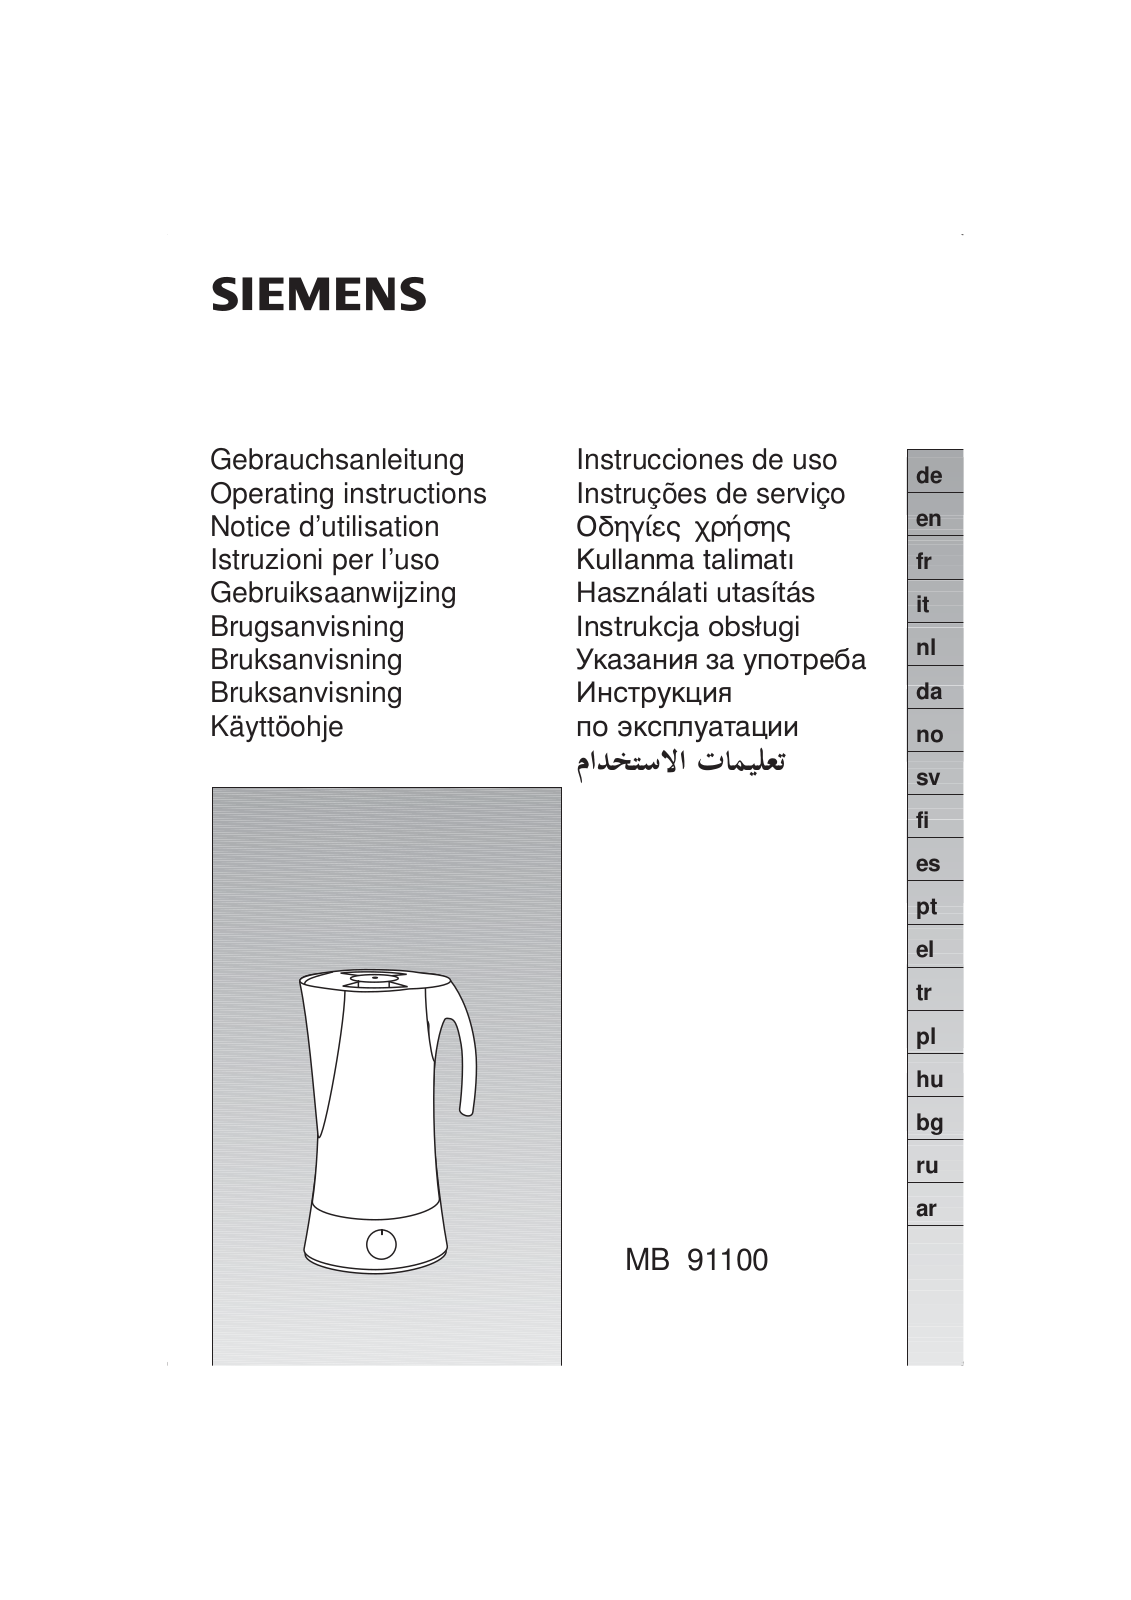 SIEMENS MC 91100, MB91101 User Manual